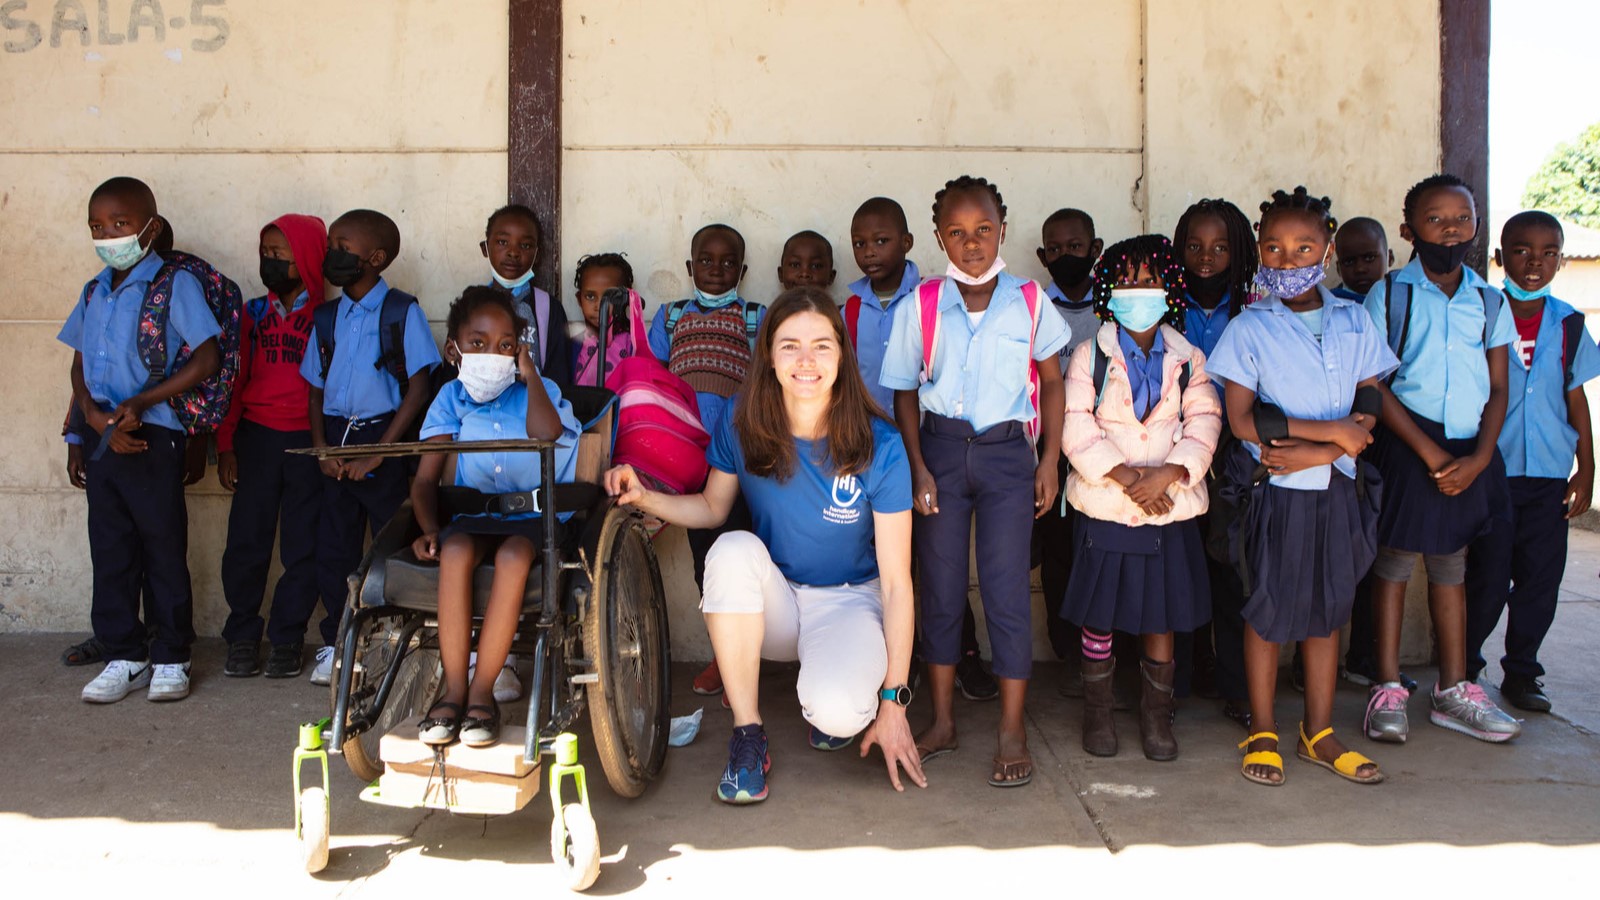 Celine Van Till | Celine van Till, Vizepräsidentin und Botschafterin von Handicap International Schweiz, in der Bildmitte, umgeben von Schulkindern in Maputo, Mosambik.